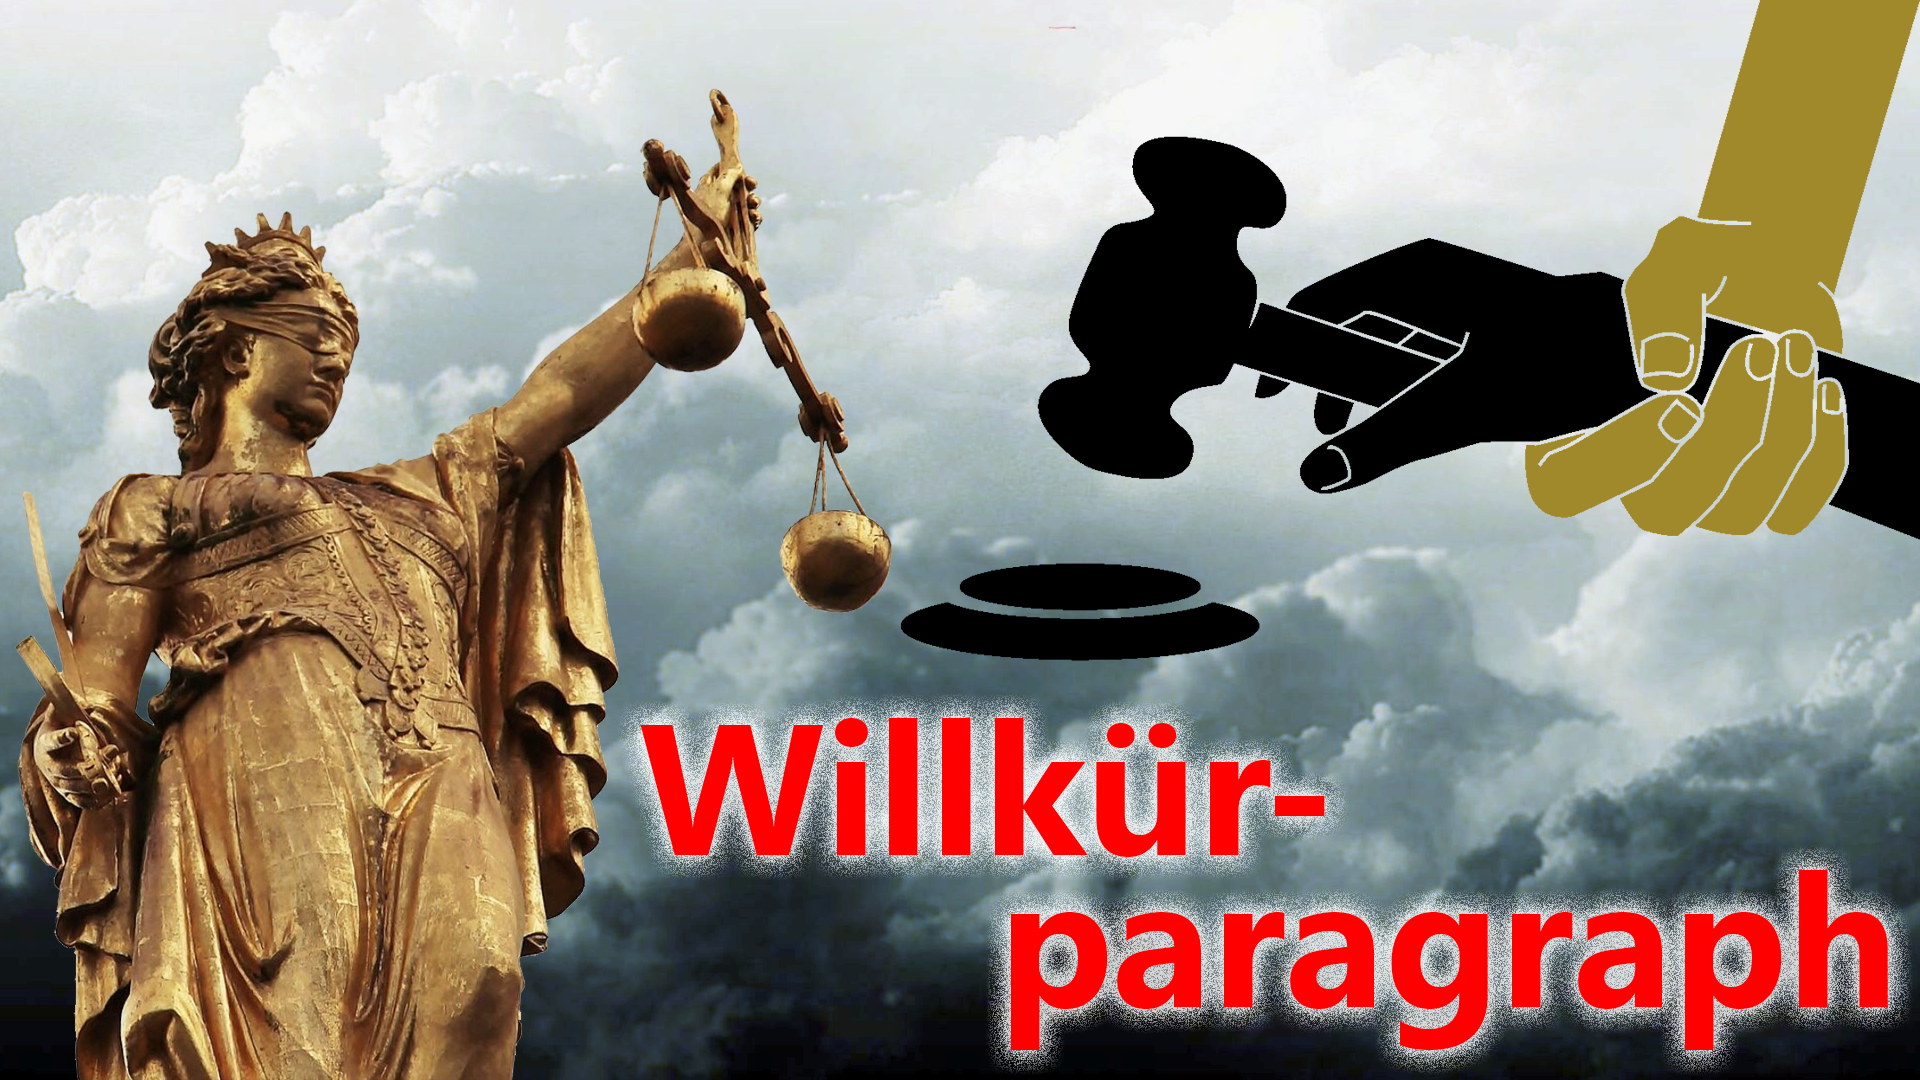 bild-willkrparagraph-terrorgesetz-de.png